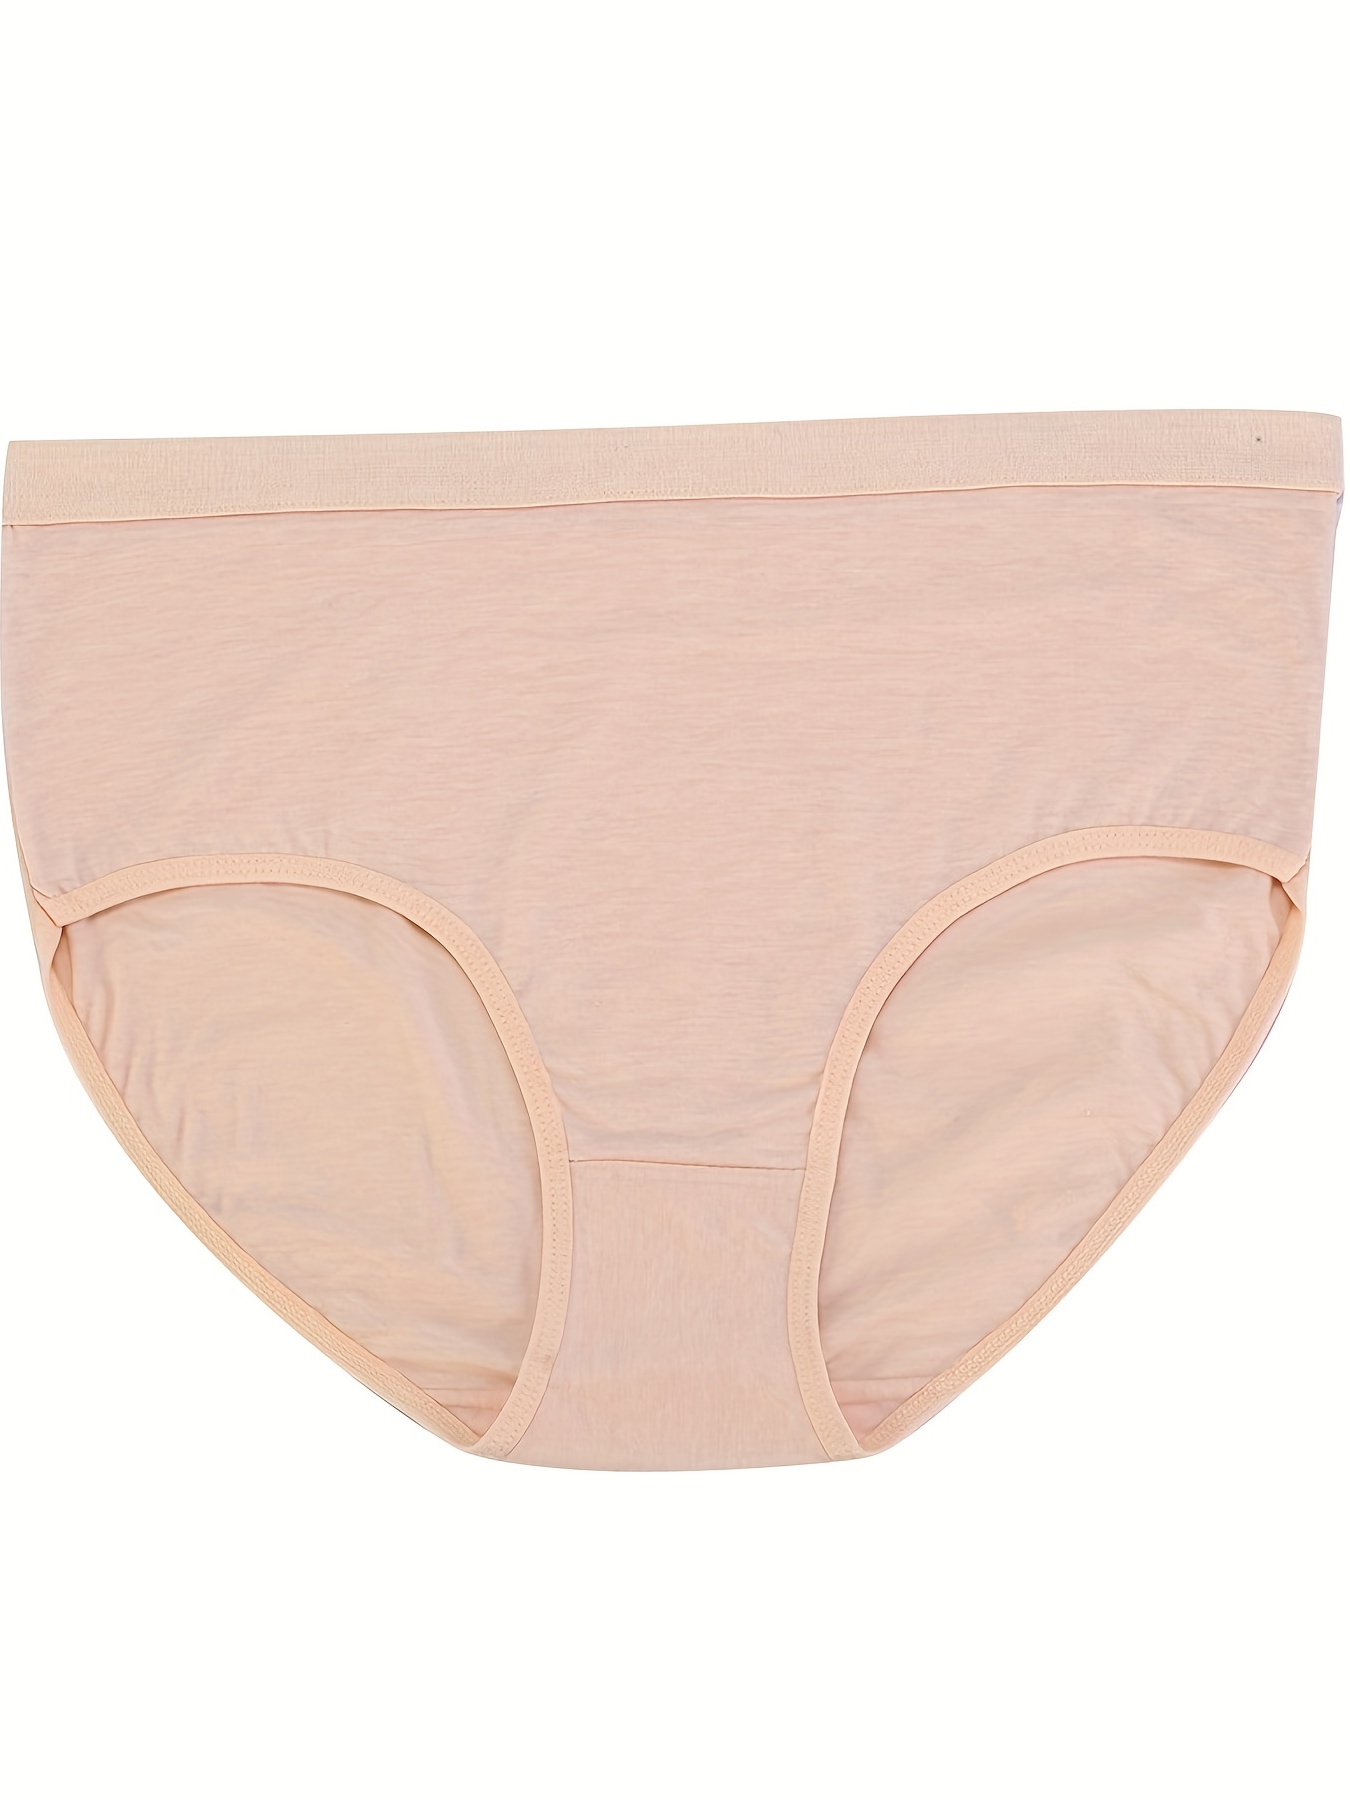 5 Pack Plus Size Basic Underwear Set, Women's Plus Plain High * Stretchy  Panty Five Piece Set